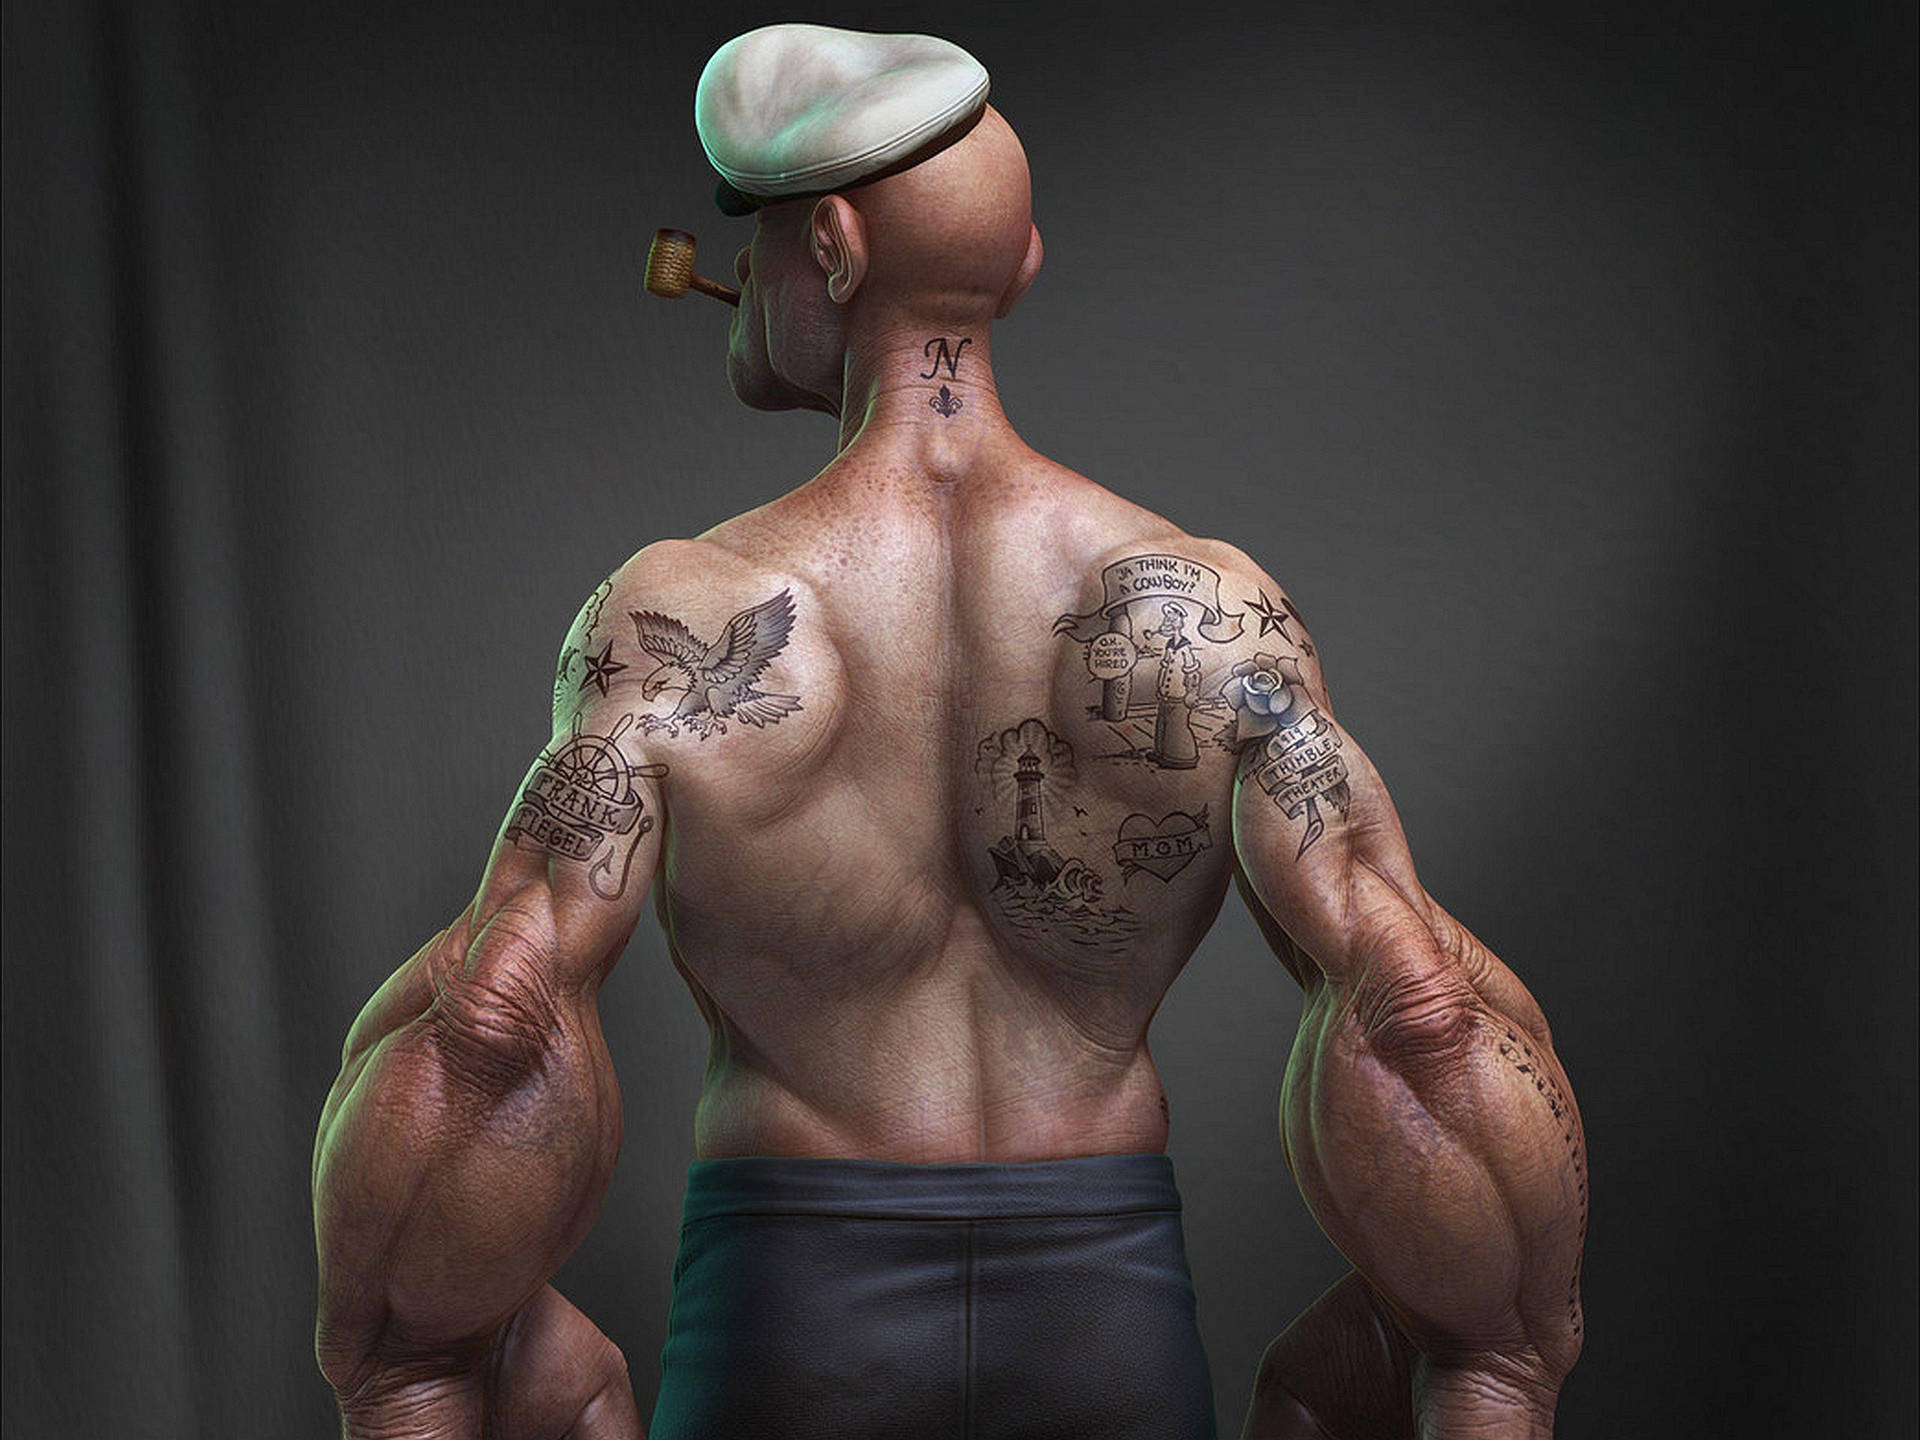 Popeye's Half-body Background